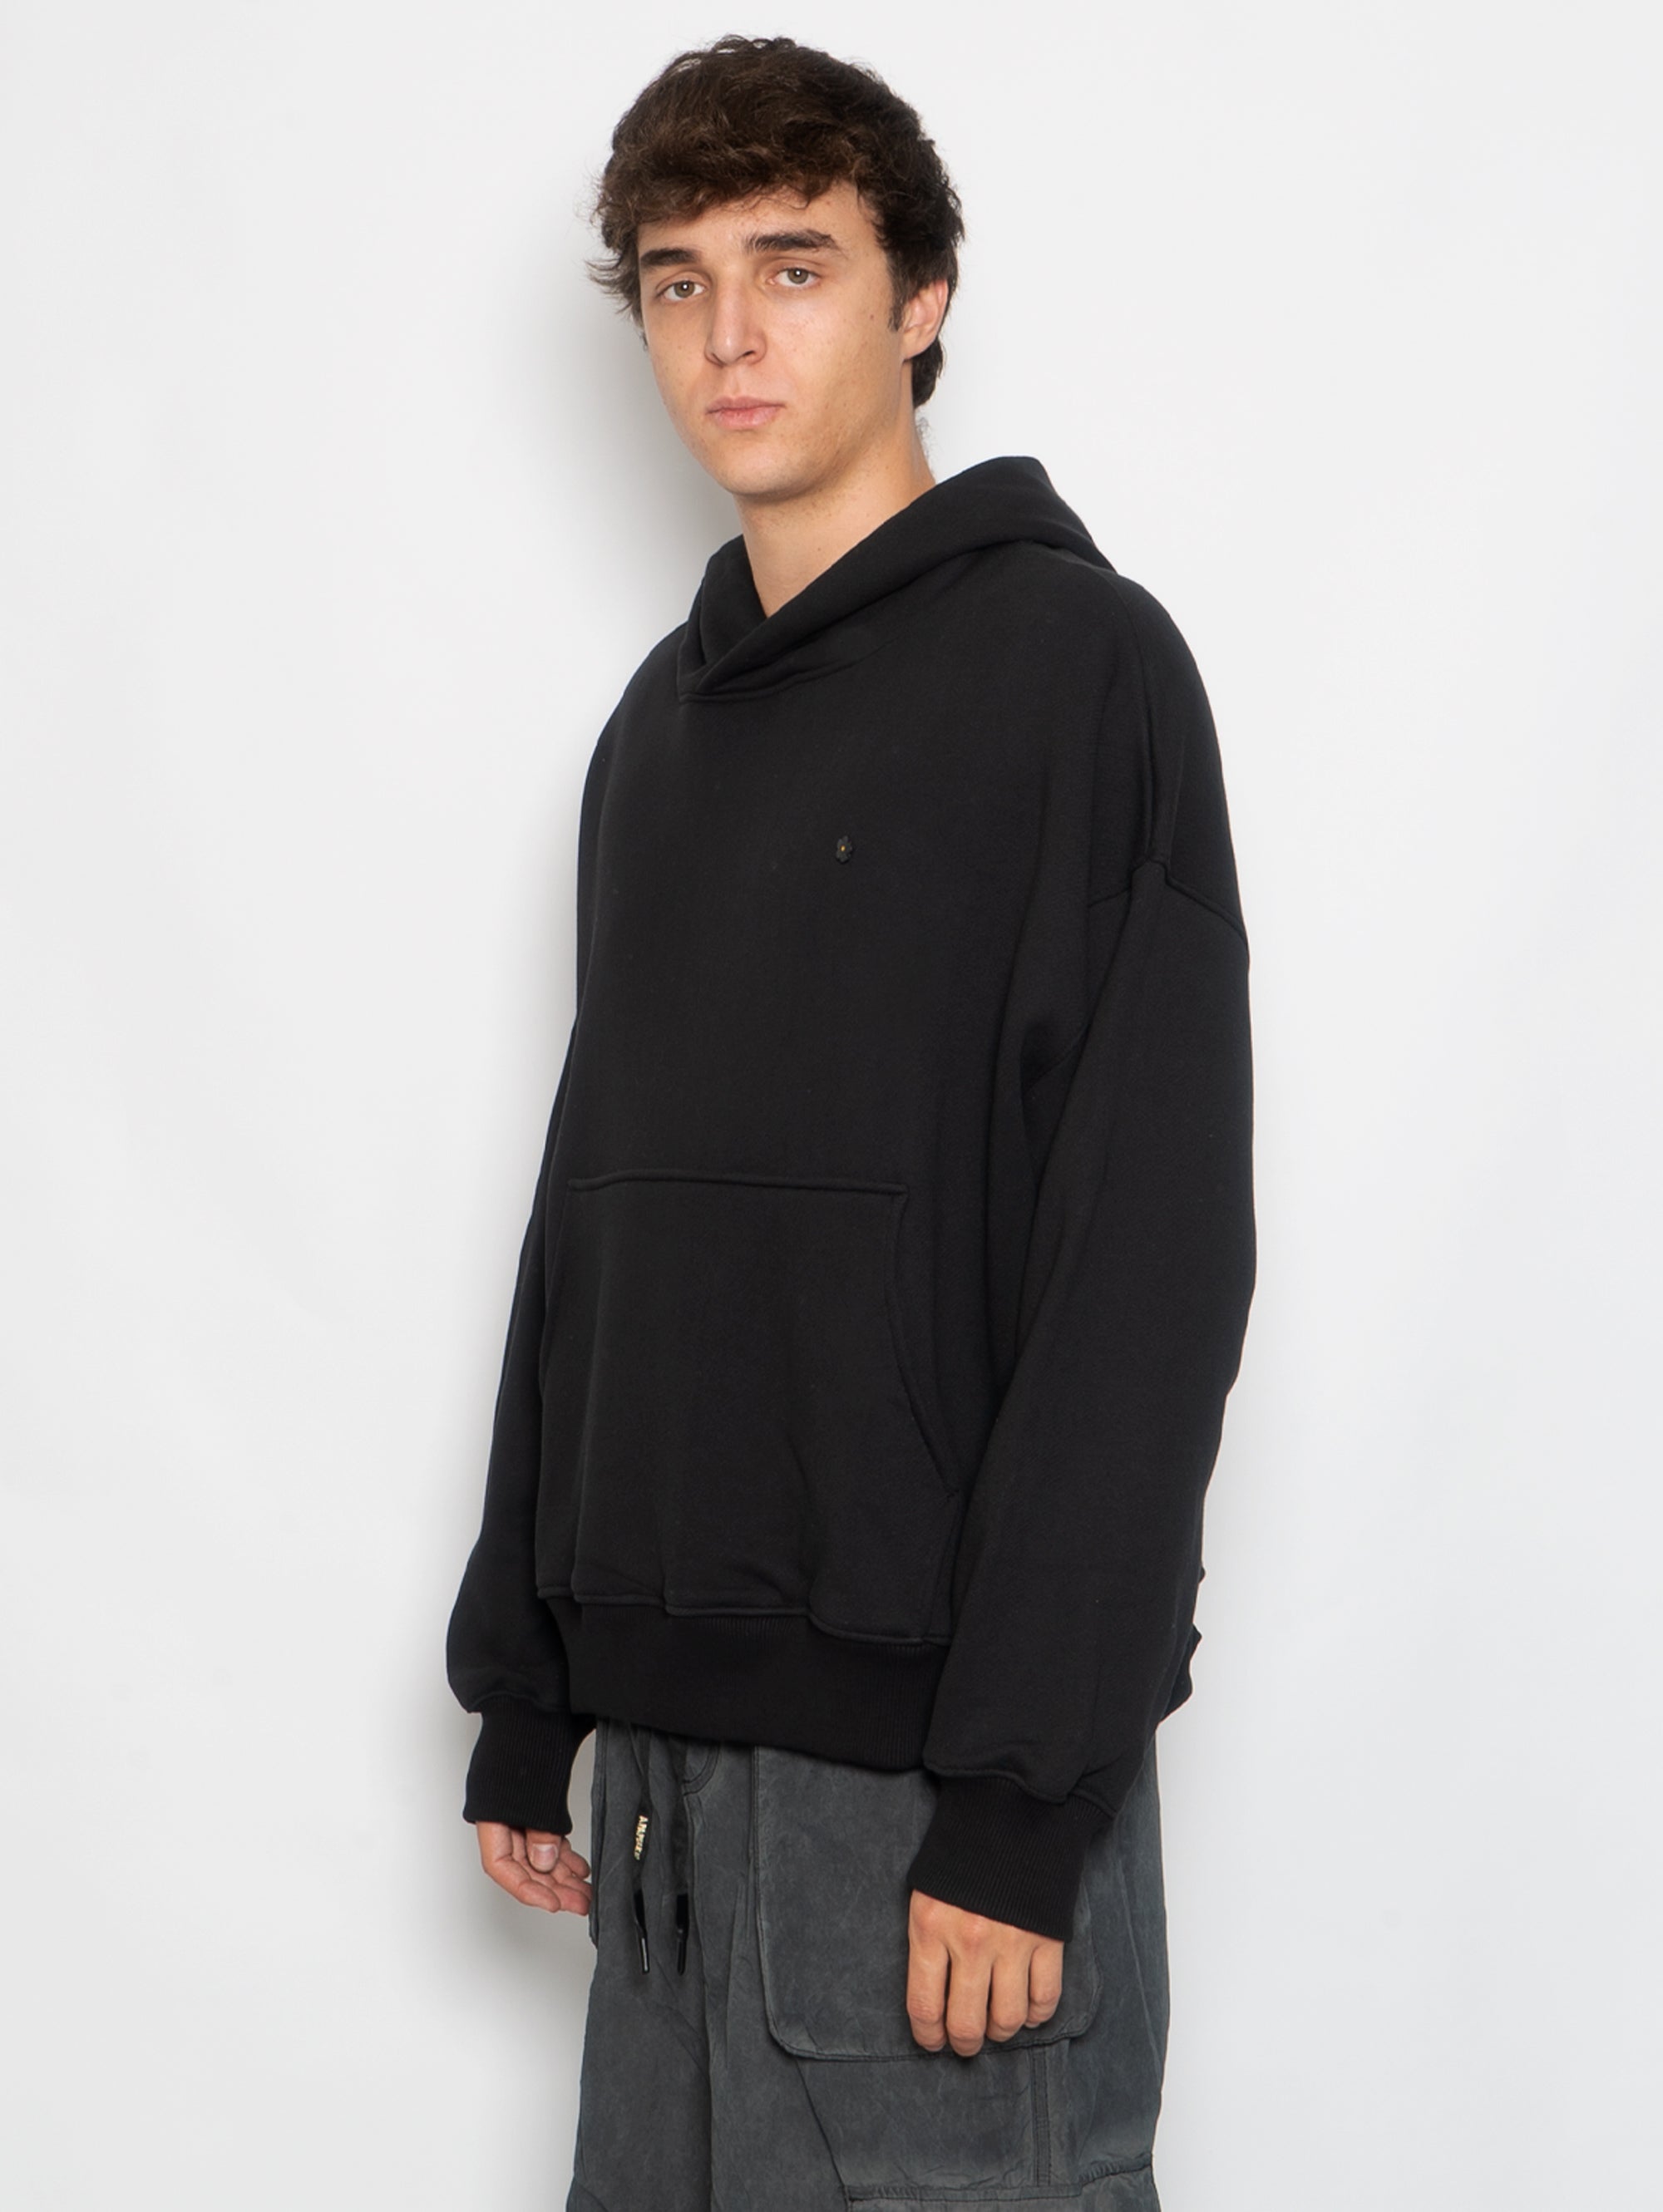 Sweatshirt with Black Hood